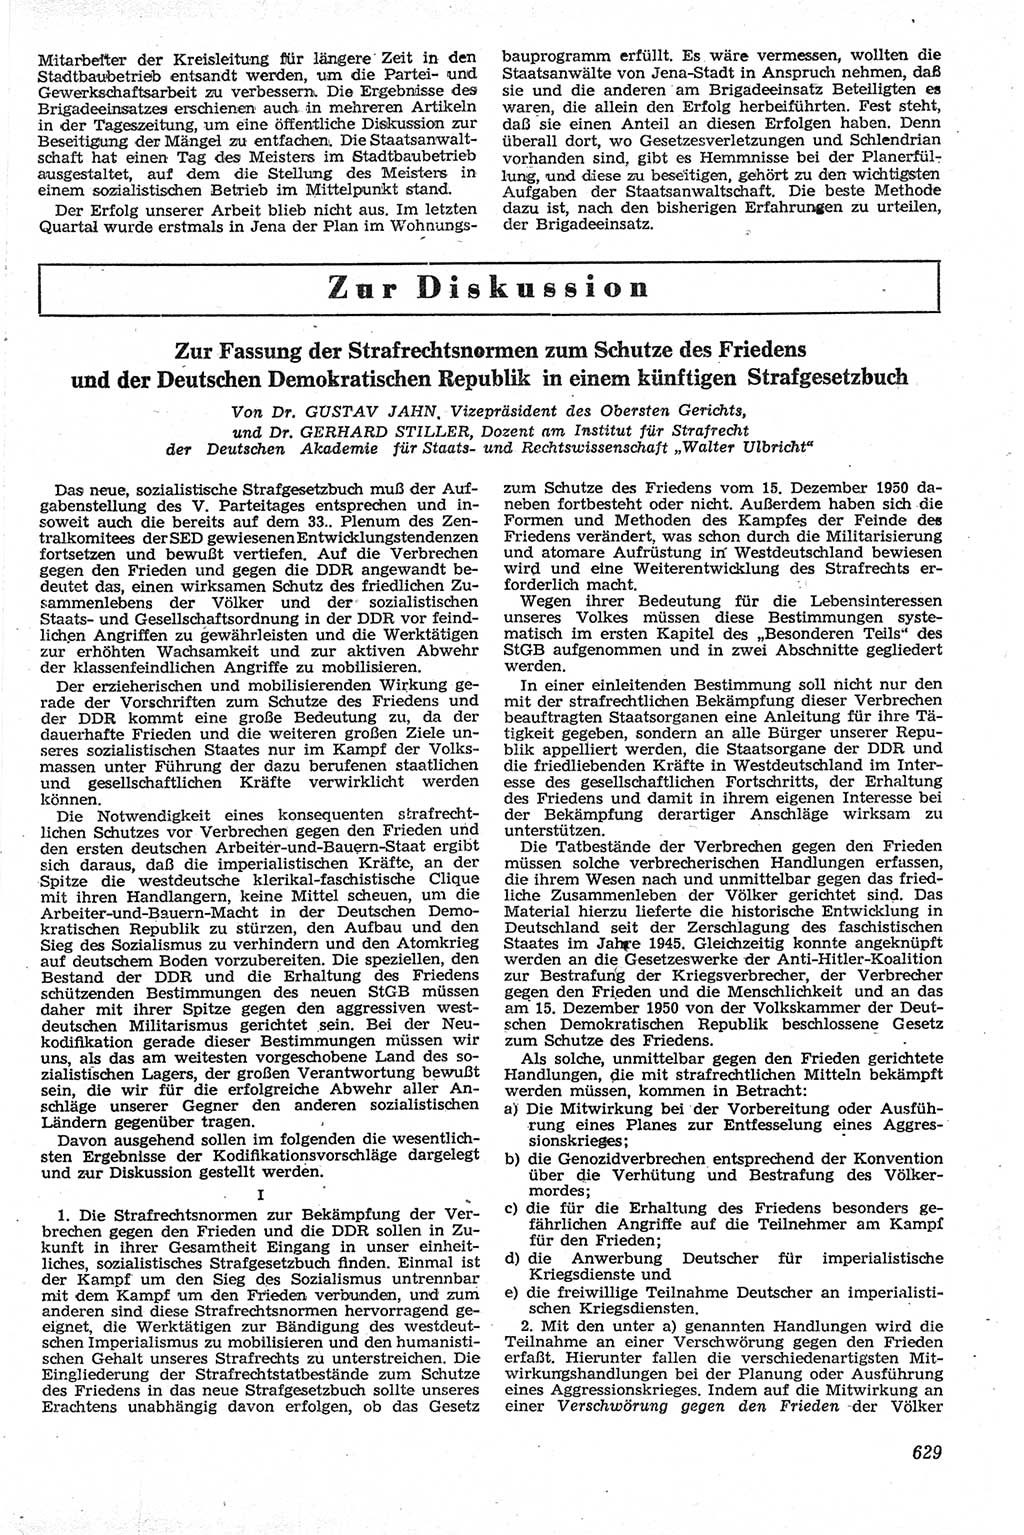 Neue Justiz (NJ), Zeitschrift für Recht und Rechtswissenschaft [Deutsche Demokratische Republik (DDR)], 13. Jahrgang 1959, Seite 629 (NJ DDR 1959, S. 629)